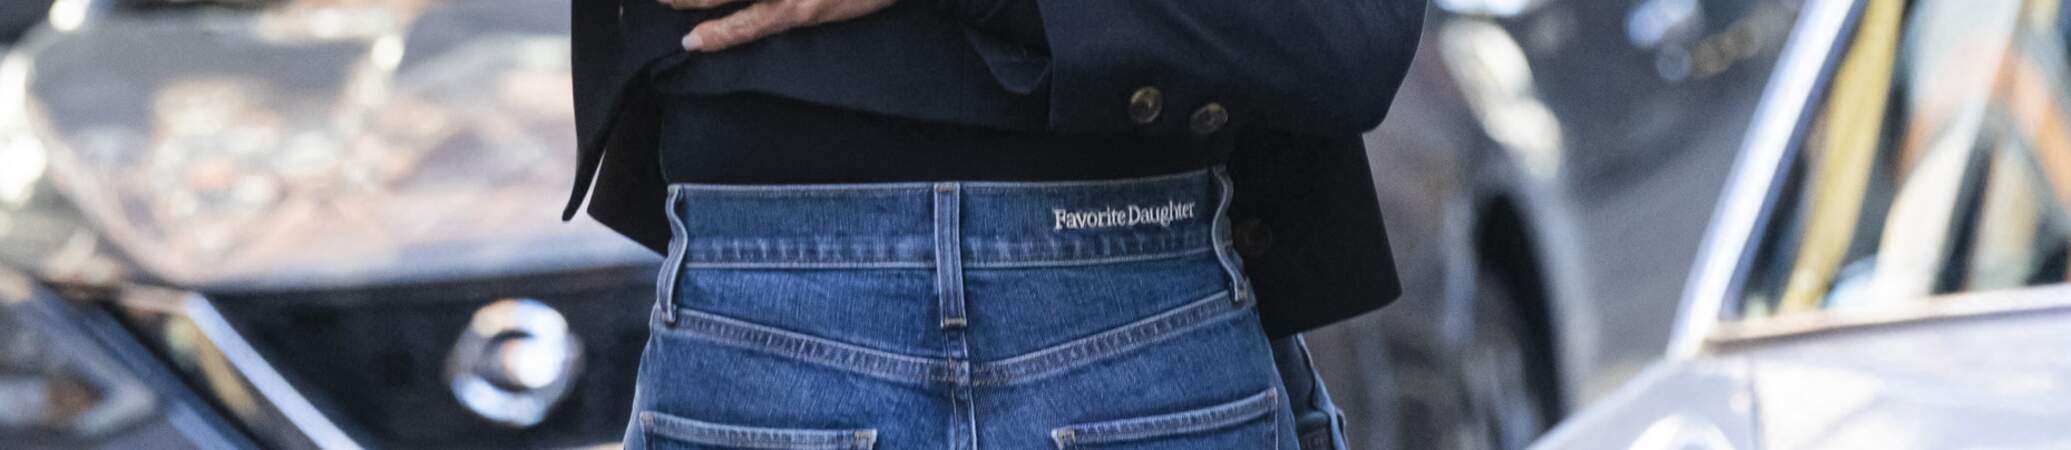 Jennifer Aniston opte pour un jean de la marque Favorite Daughter sur le tournage de la série "The Morning Show" à New York, le 26 septembre 2022.